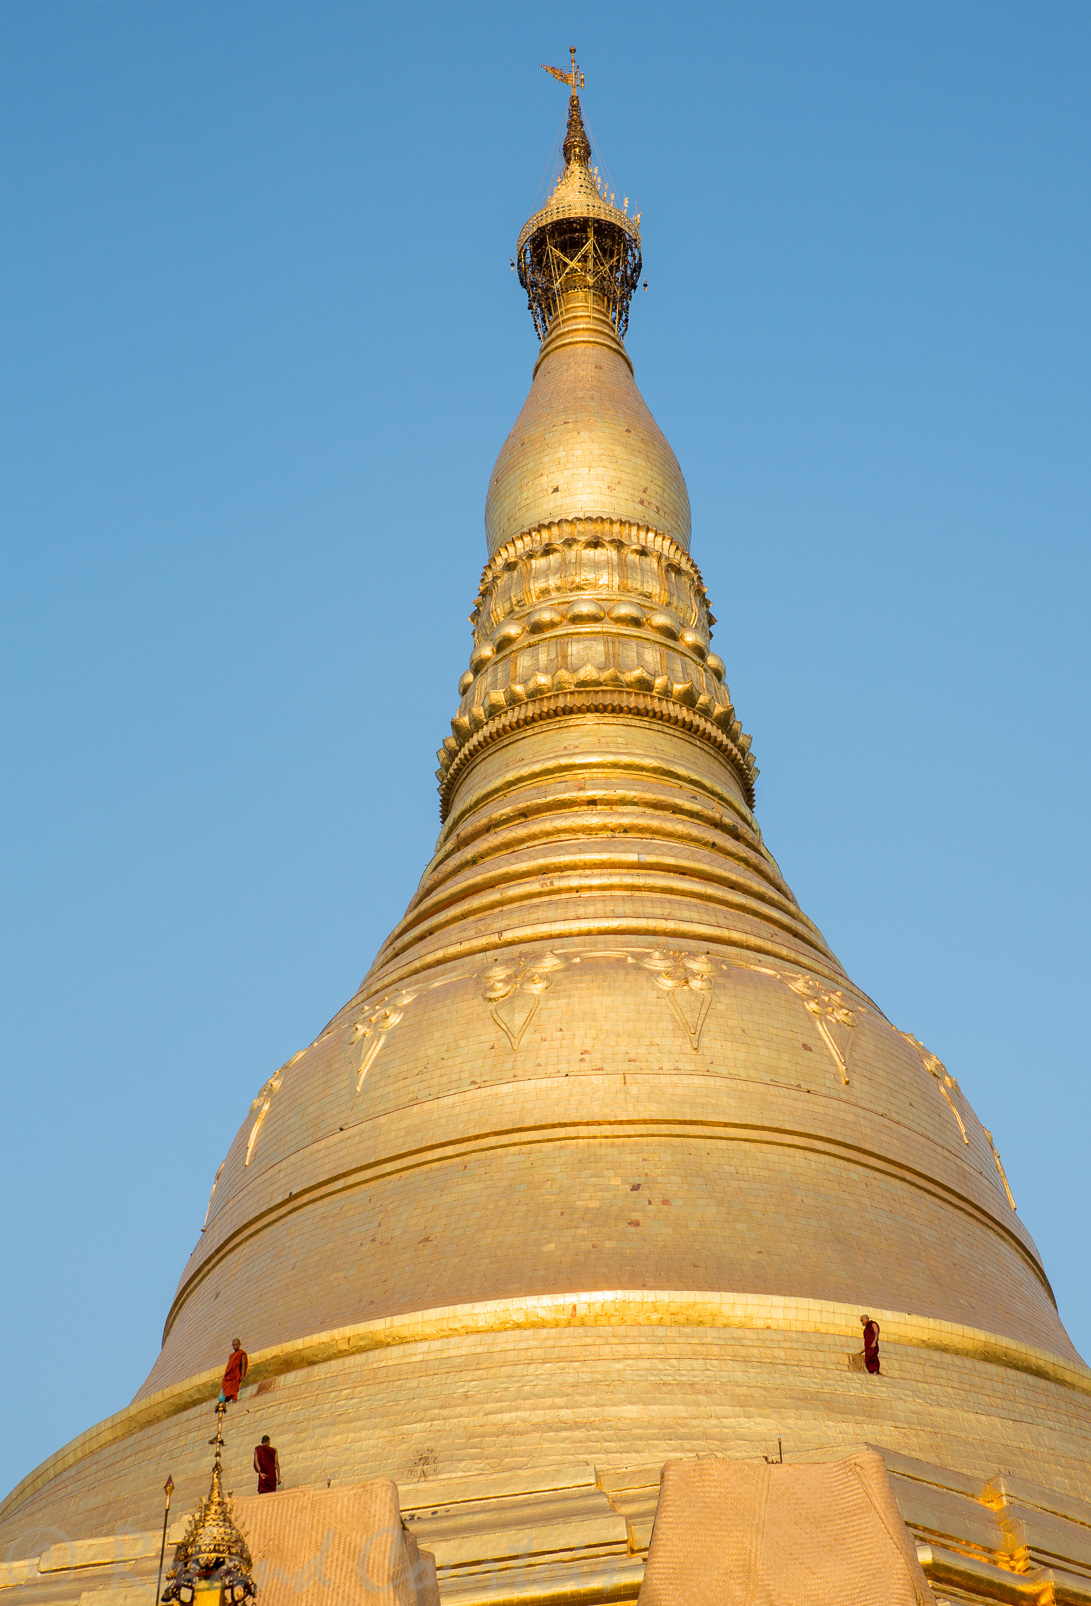 En fin de journée, des moines viennent contrôler l'état du stupa de la pagode Shwedagon. Cela donne l'échelle de ce monument.